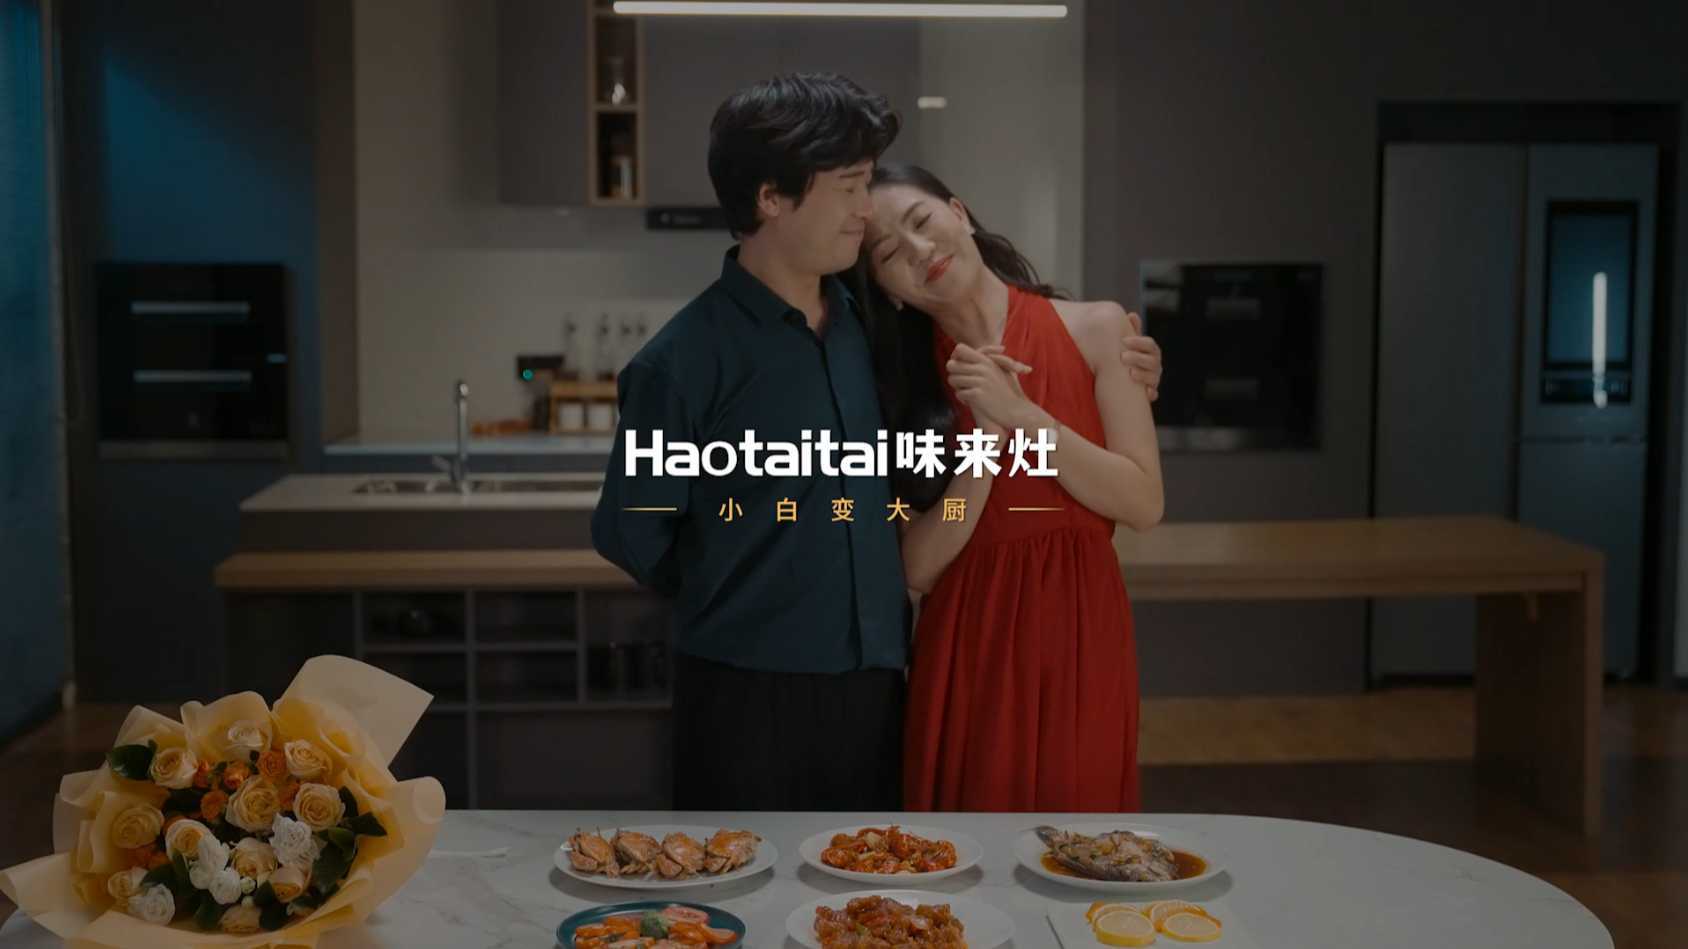 【Haotaitai】创意广告“我叫小白”90s